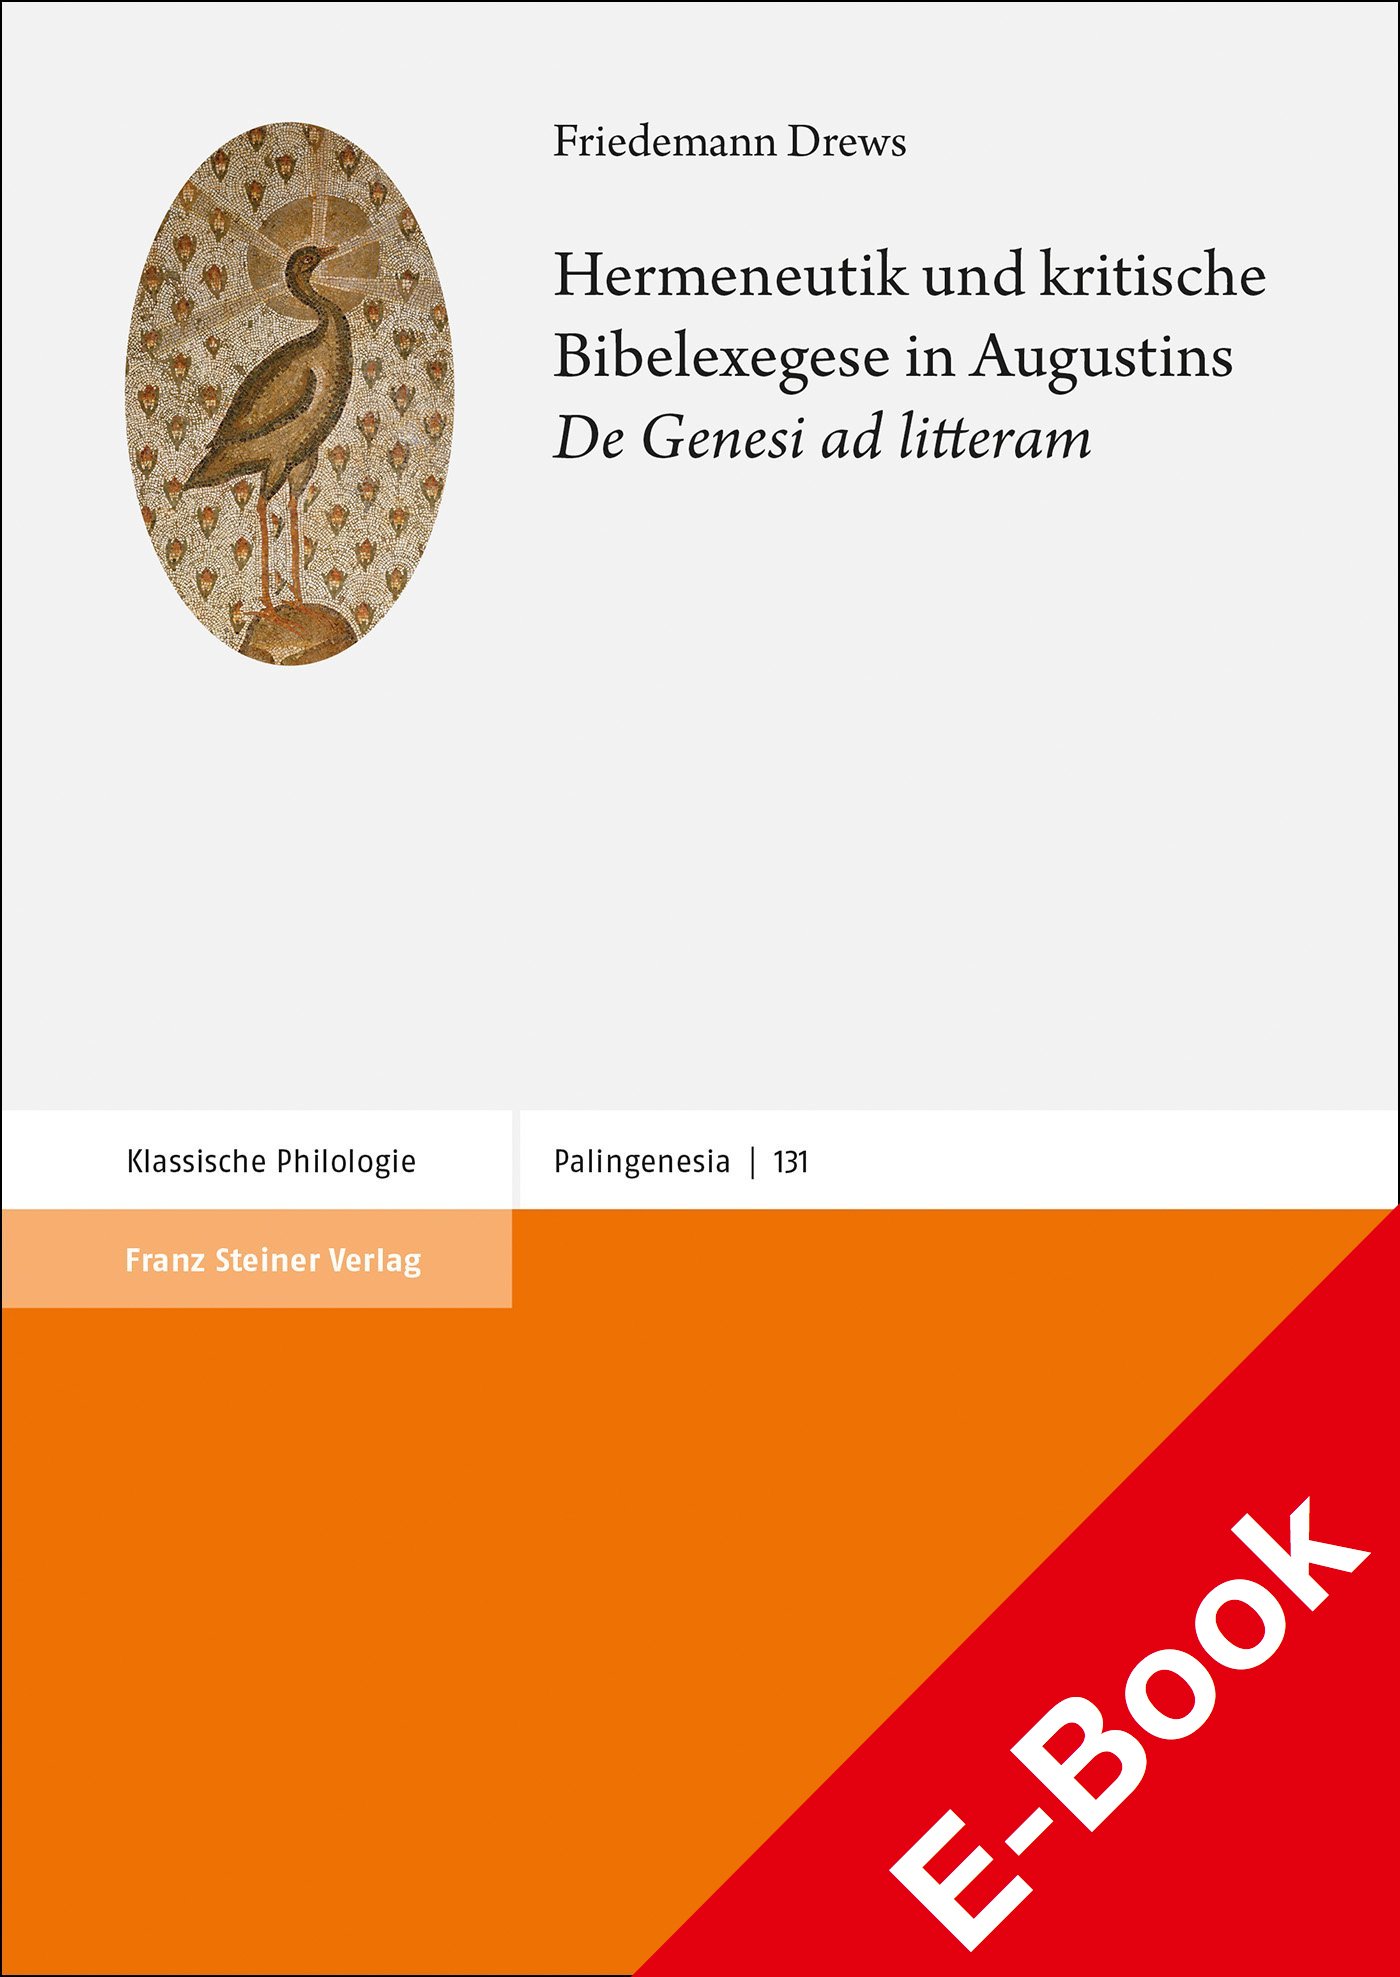 Hermeneutik und kritische Bibelexegese in Augustins "De Genesi ad litteram"